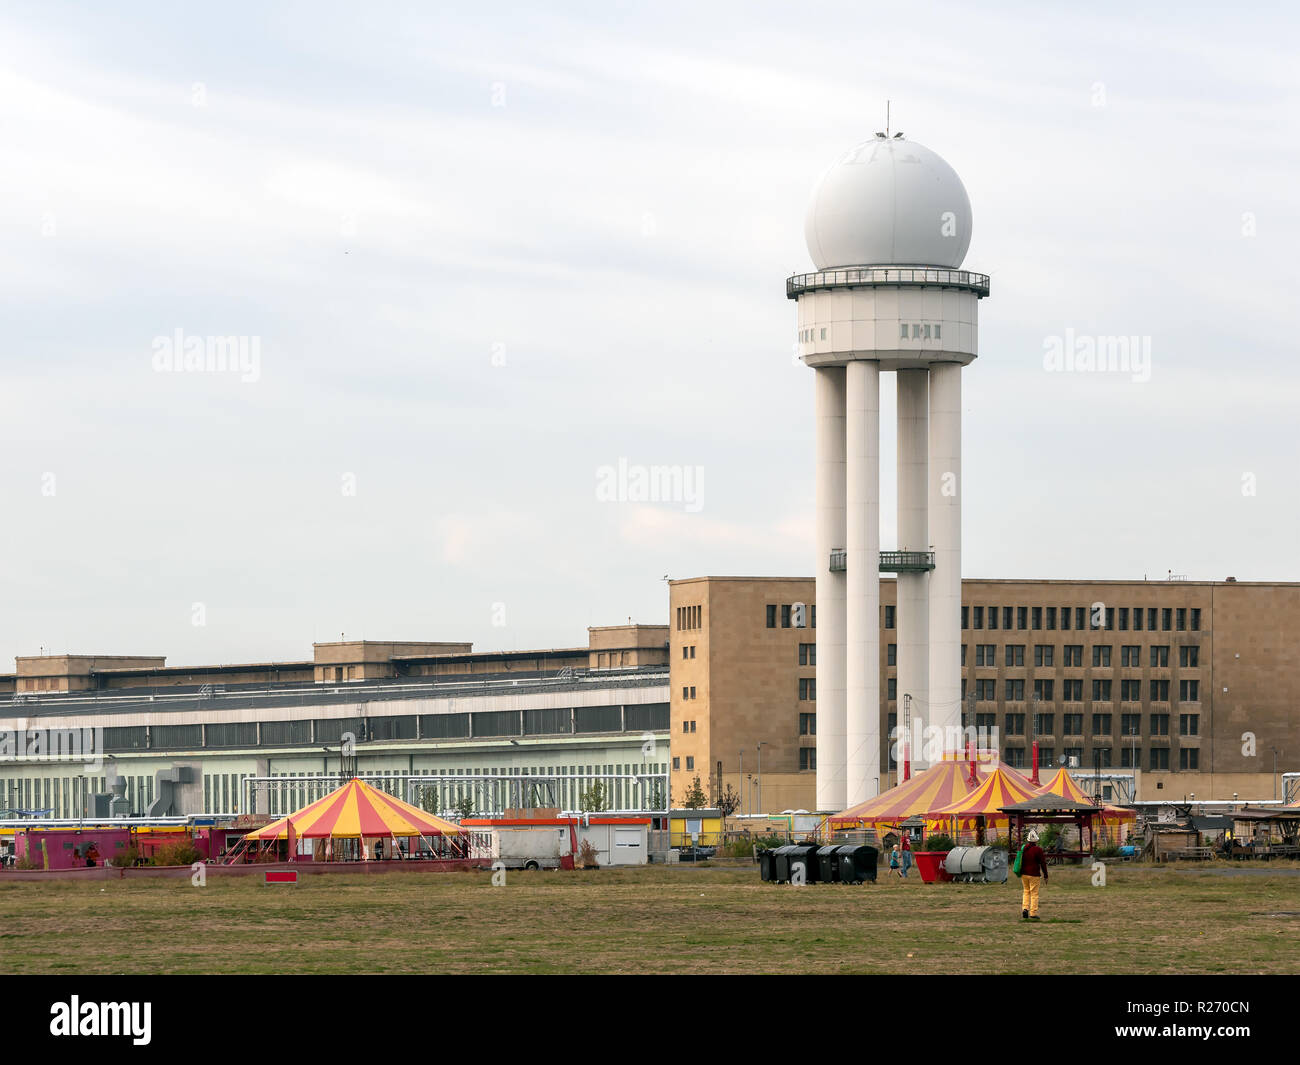 Berlín, Alemania - 10 de octubre, 2018: PVP 117 torre de radar en público City Park TEMPELHOFER FELD, el antiguo aeropuerto de Tempelhof en Berlín, Alemania Foto de stock